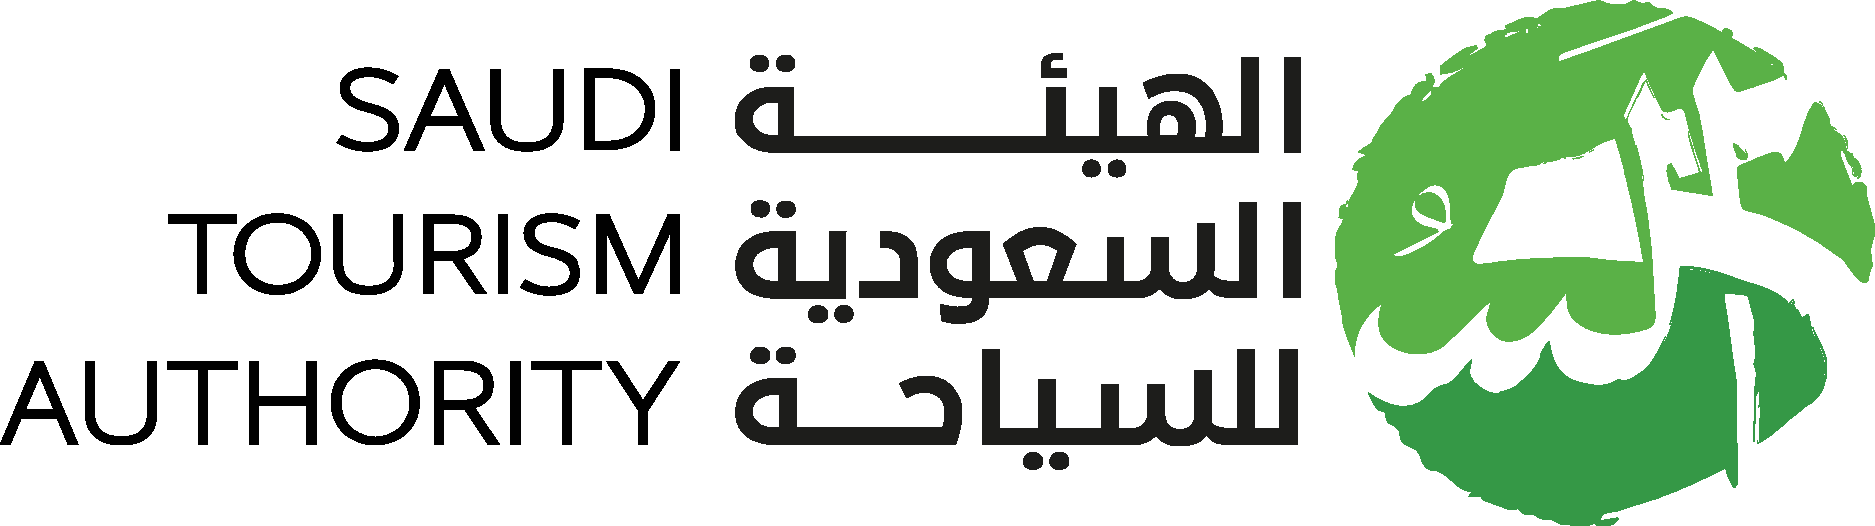 Saudi Tourism Authority Logo Vector